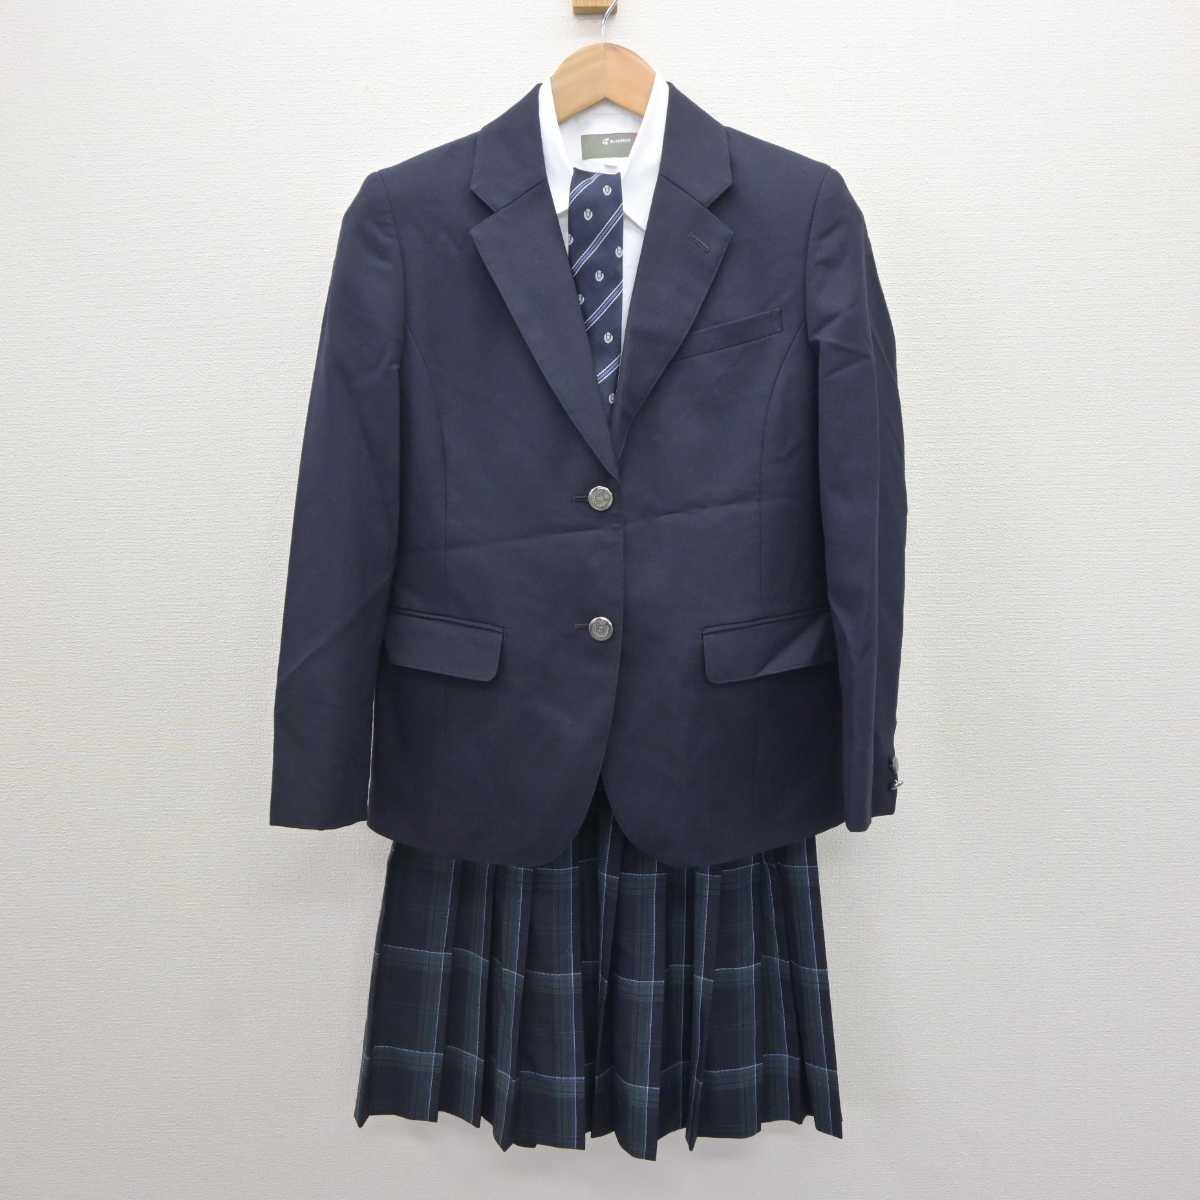 【中古】東京都 飛鳥高等学校 女子制服 4点 (ブレザー・シャツ・スカート) sf063292